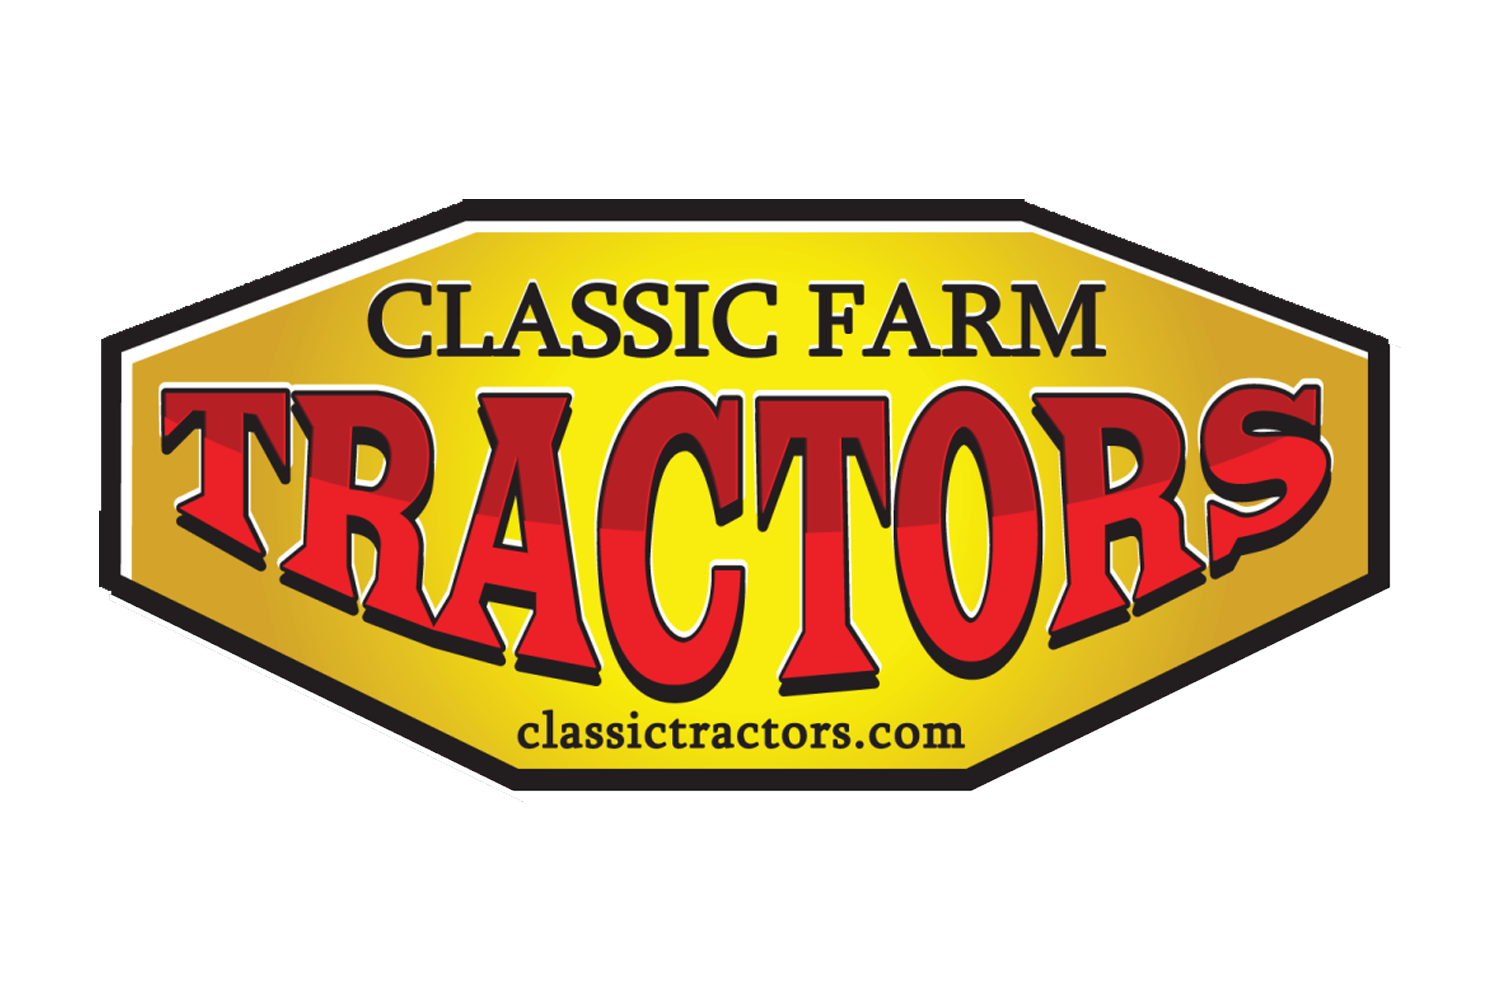 Classic Tractors